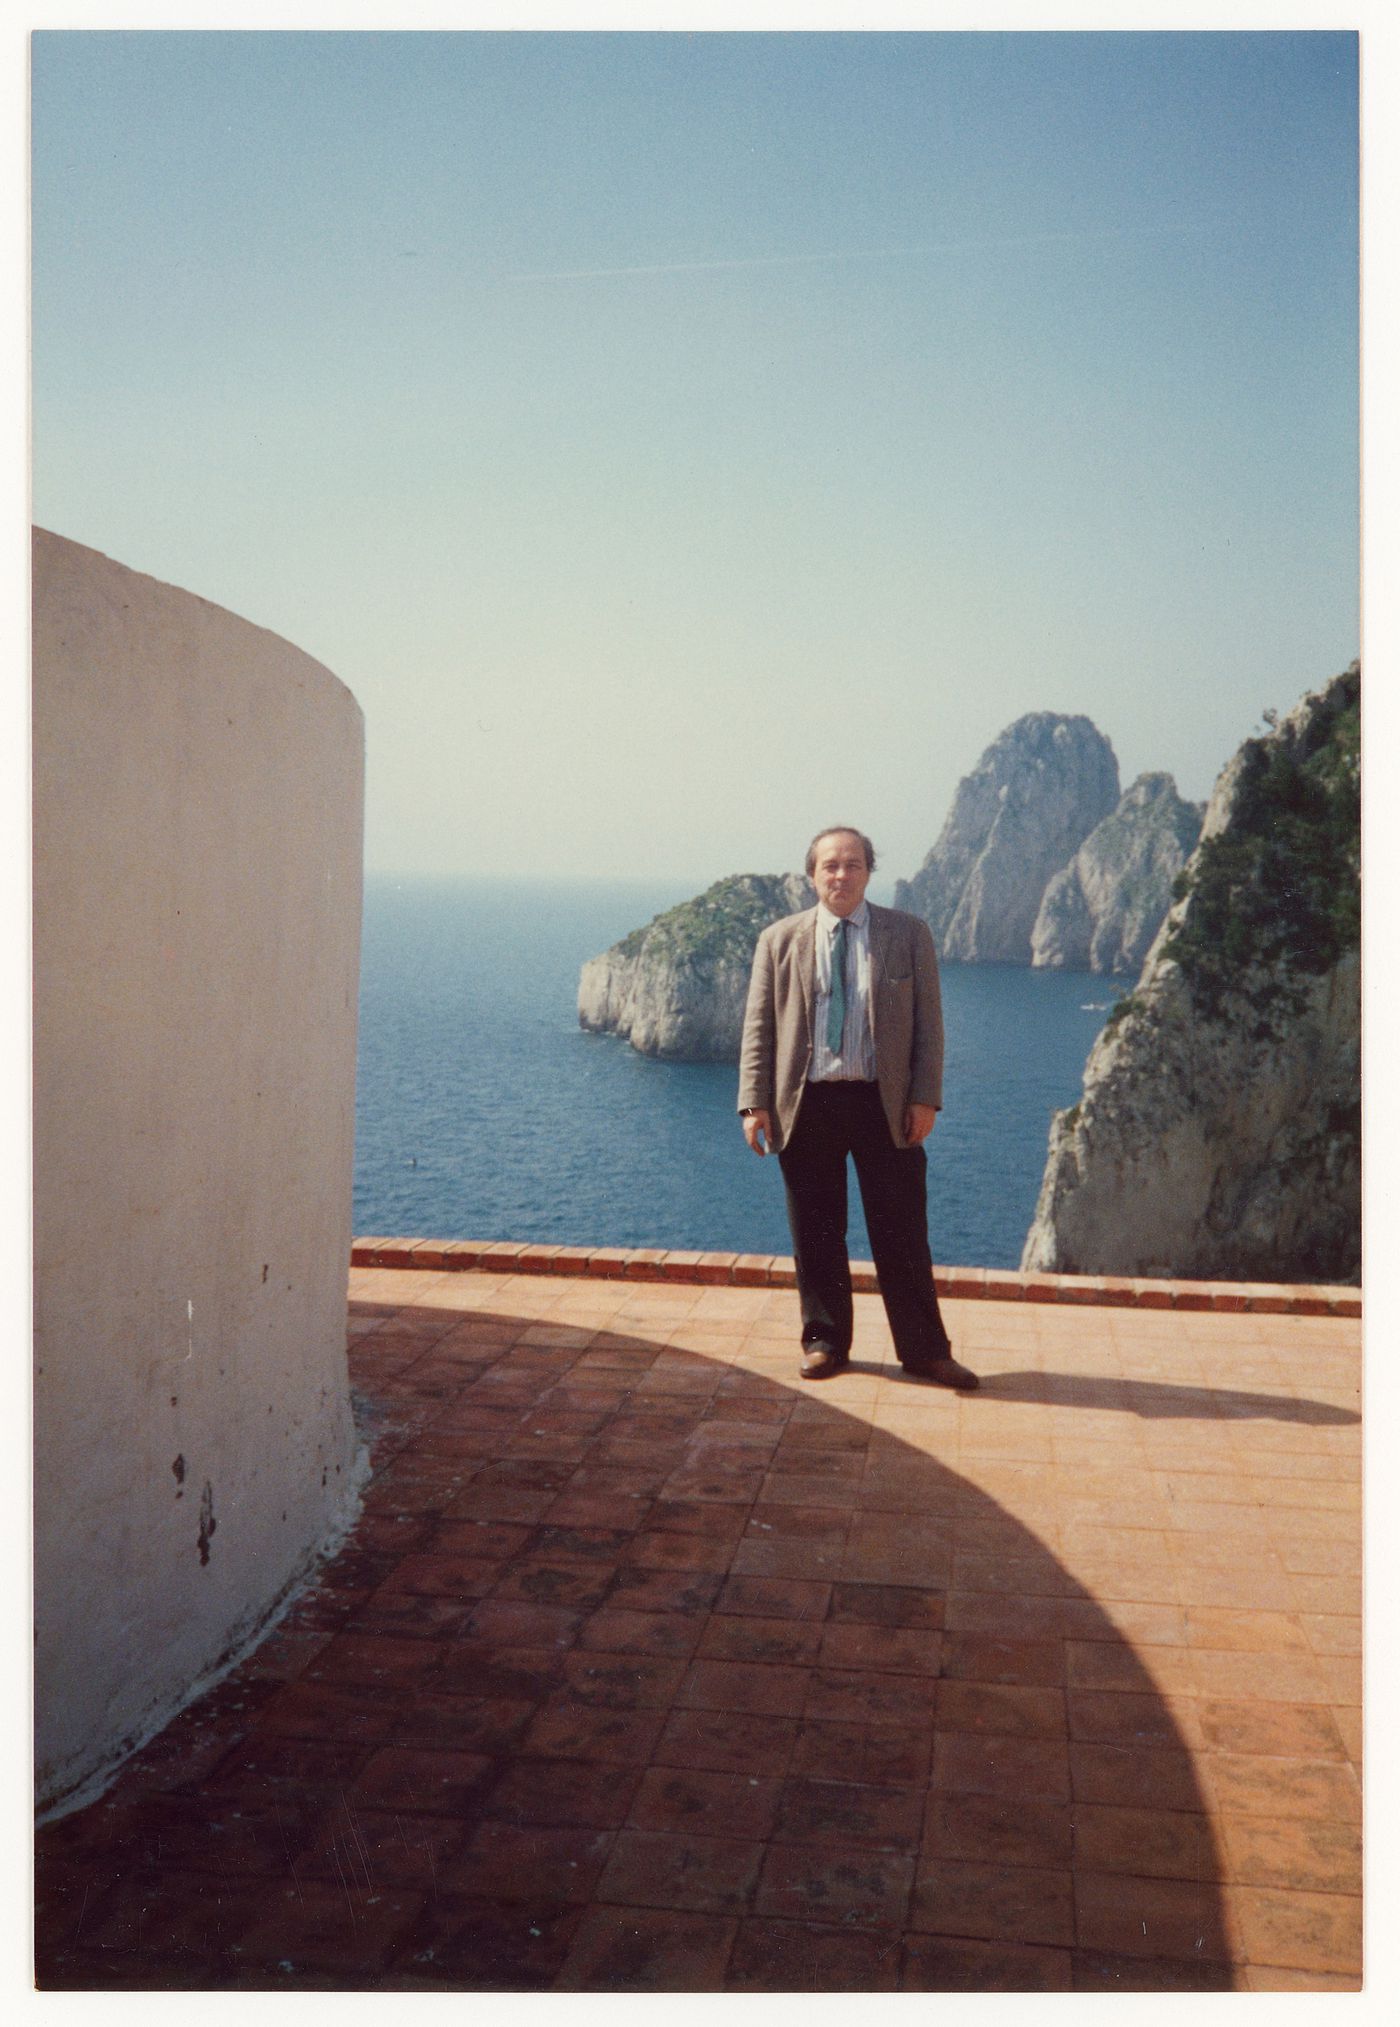 Photograph of Gianni Pettena at Casa Malaparte in Capri, Italy